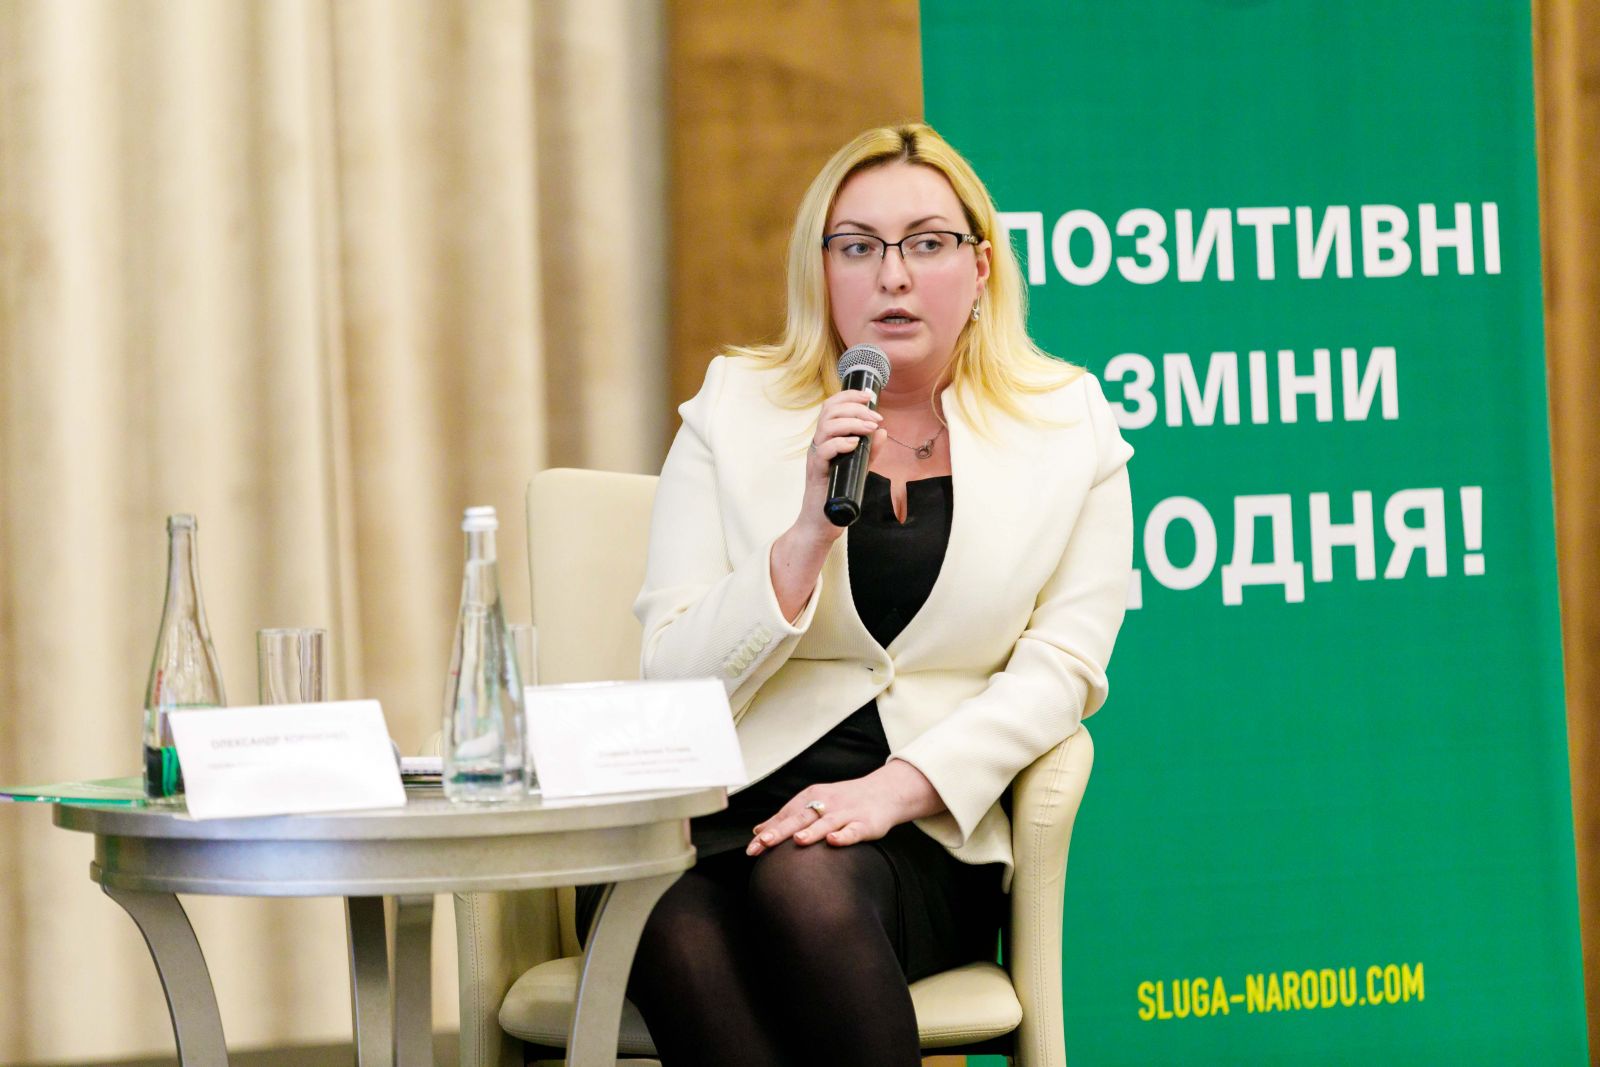 Татьяна Егорова-Луценко: "Благодаря референдуму власть перейдет на прямой диалог с украинцами"